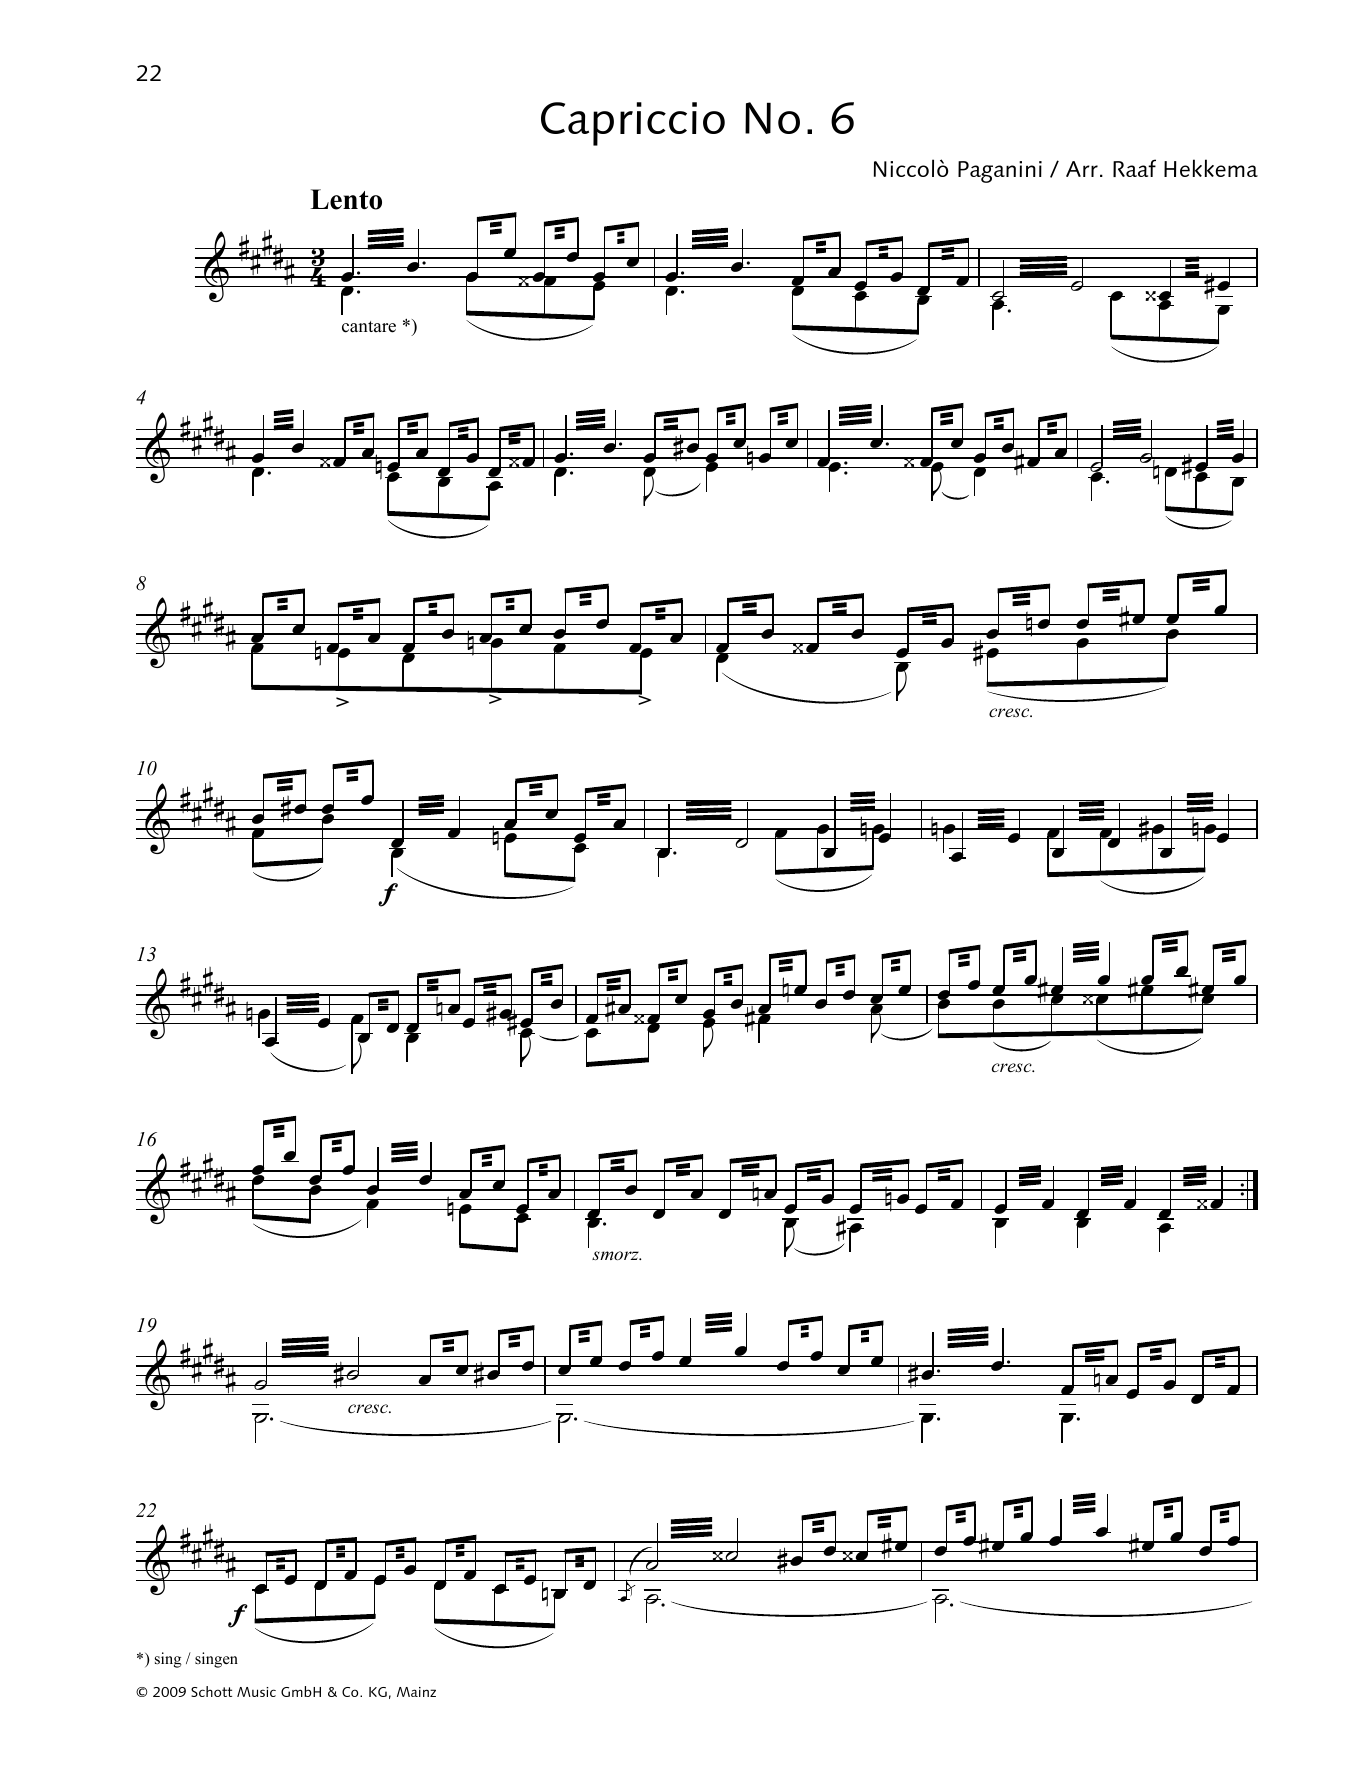 Download Niccolo Paganini Capriccio No. 6 Sheet Music